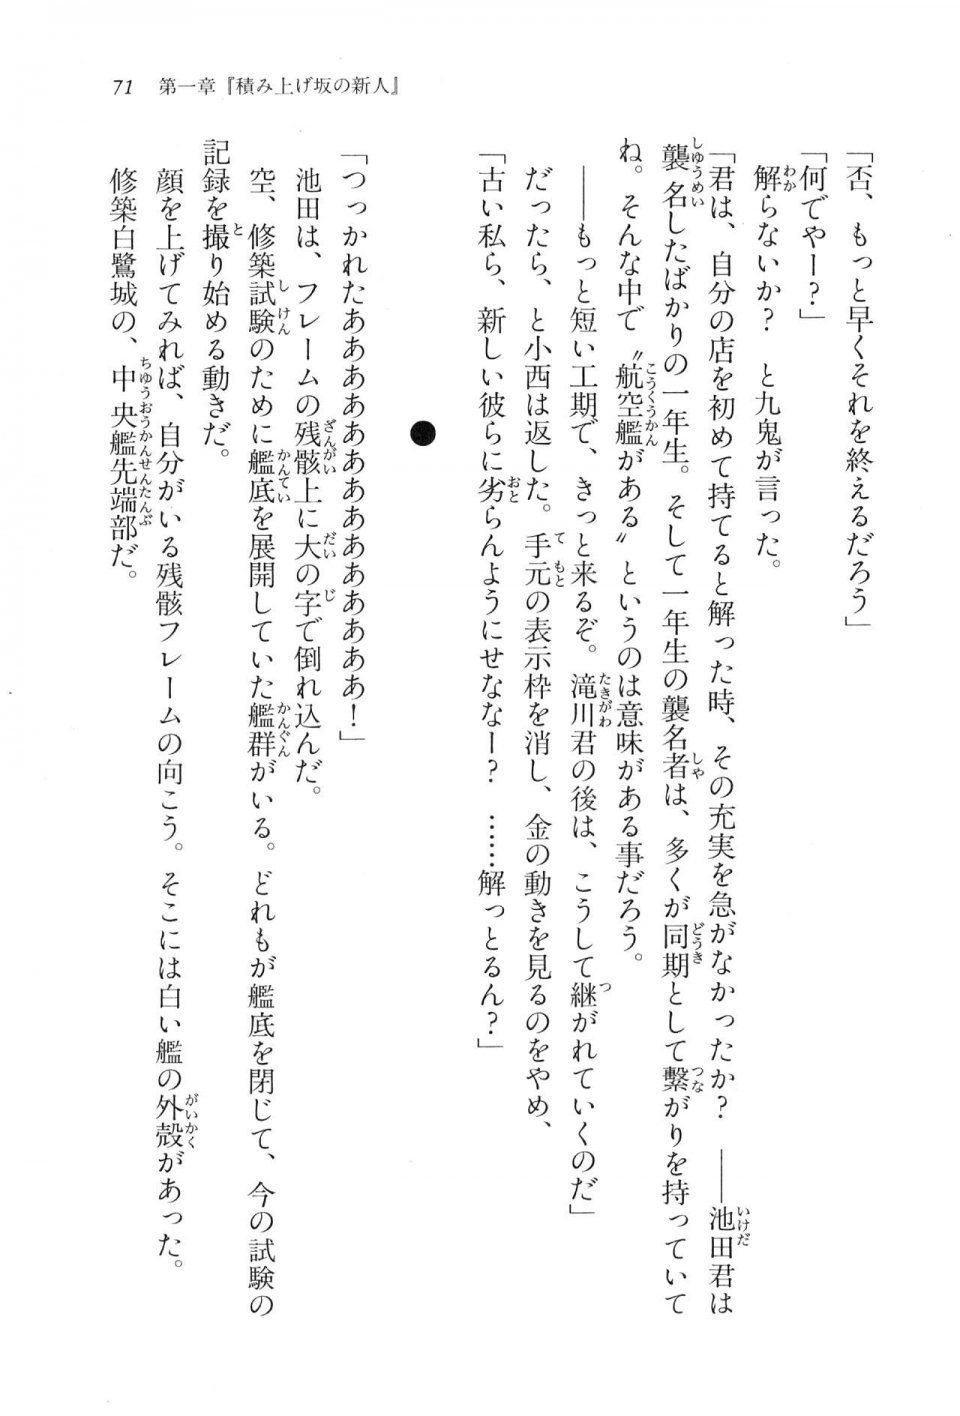 Kyoukai Senjou no Horizon LN Vol 16(7A) - Photo #71